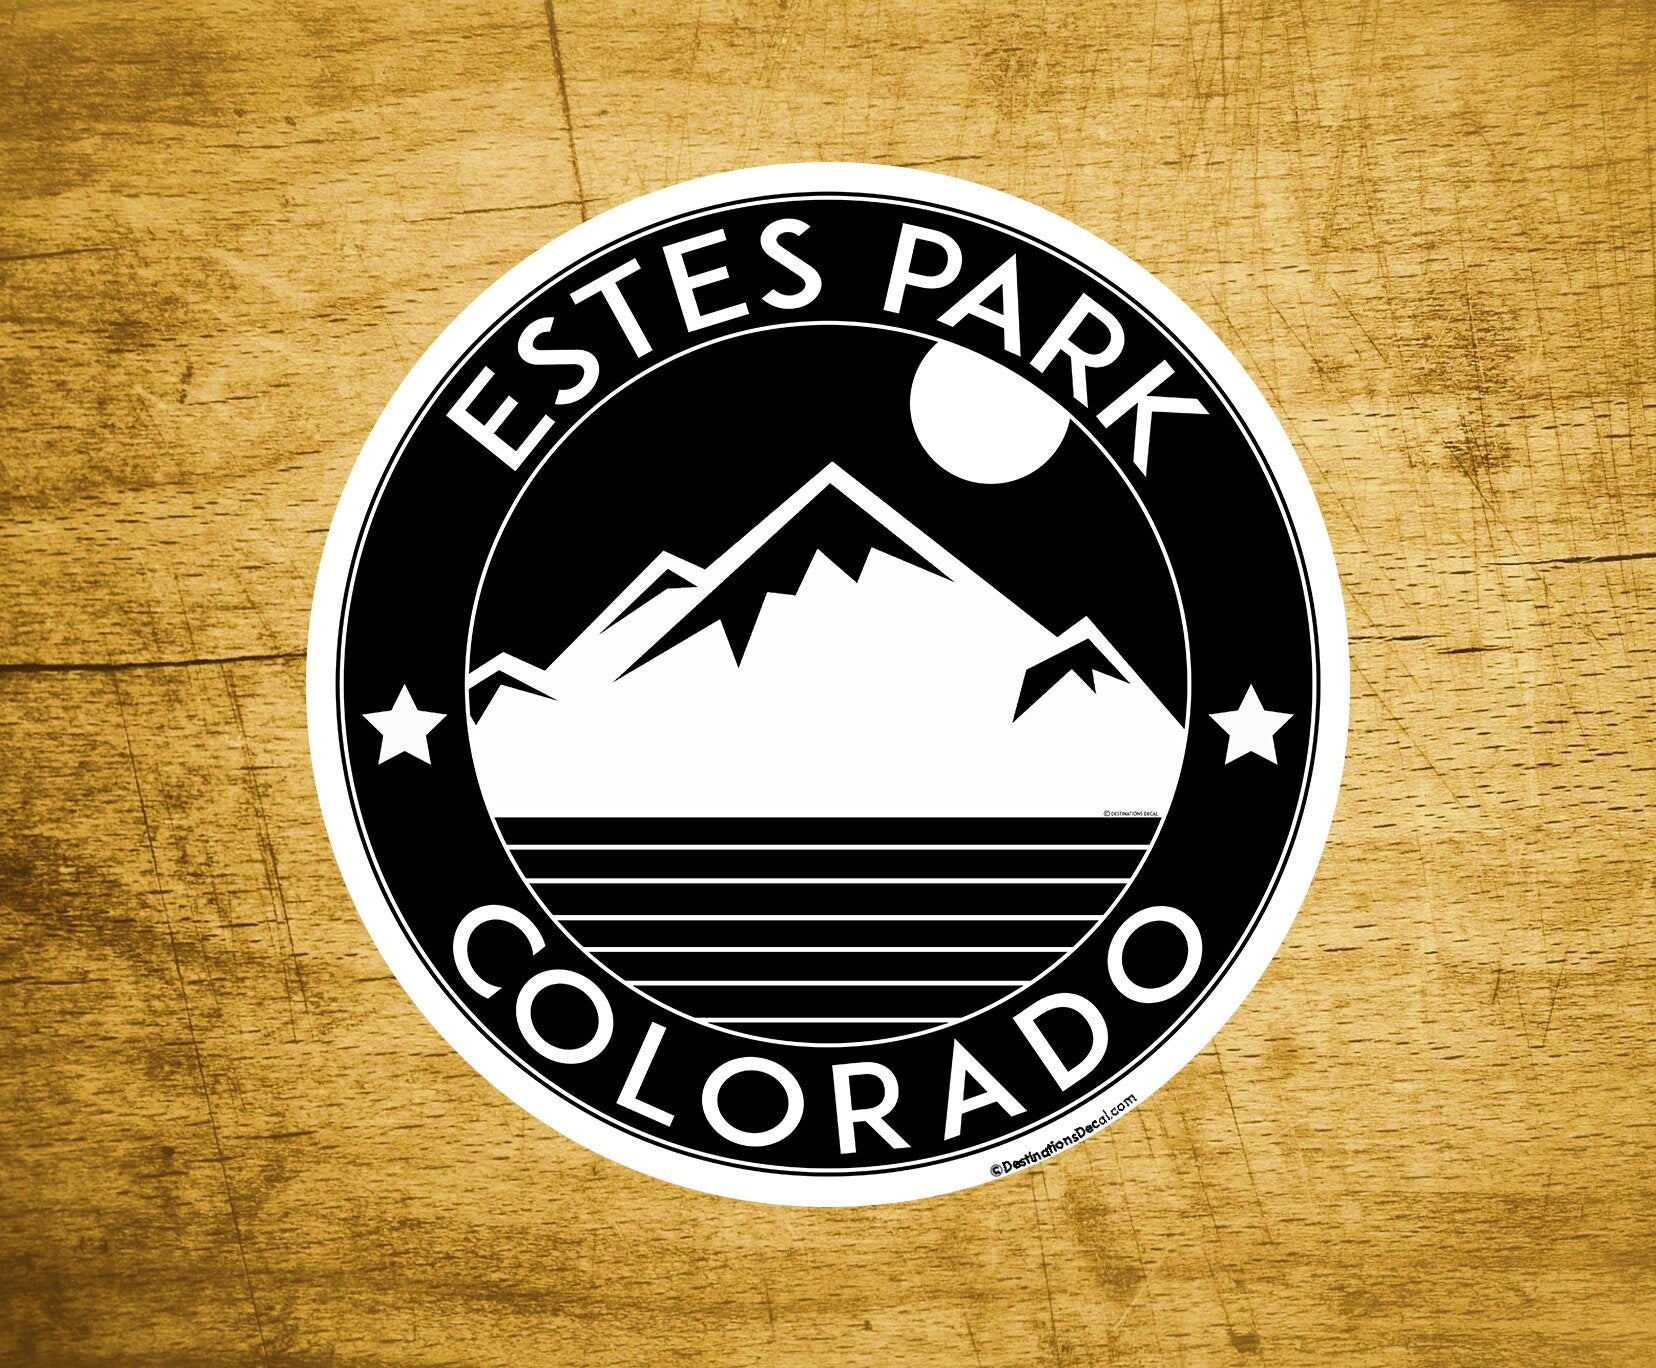 Two 2" Estes Park Colorado Vinyl Decals Stickers